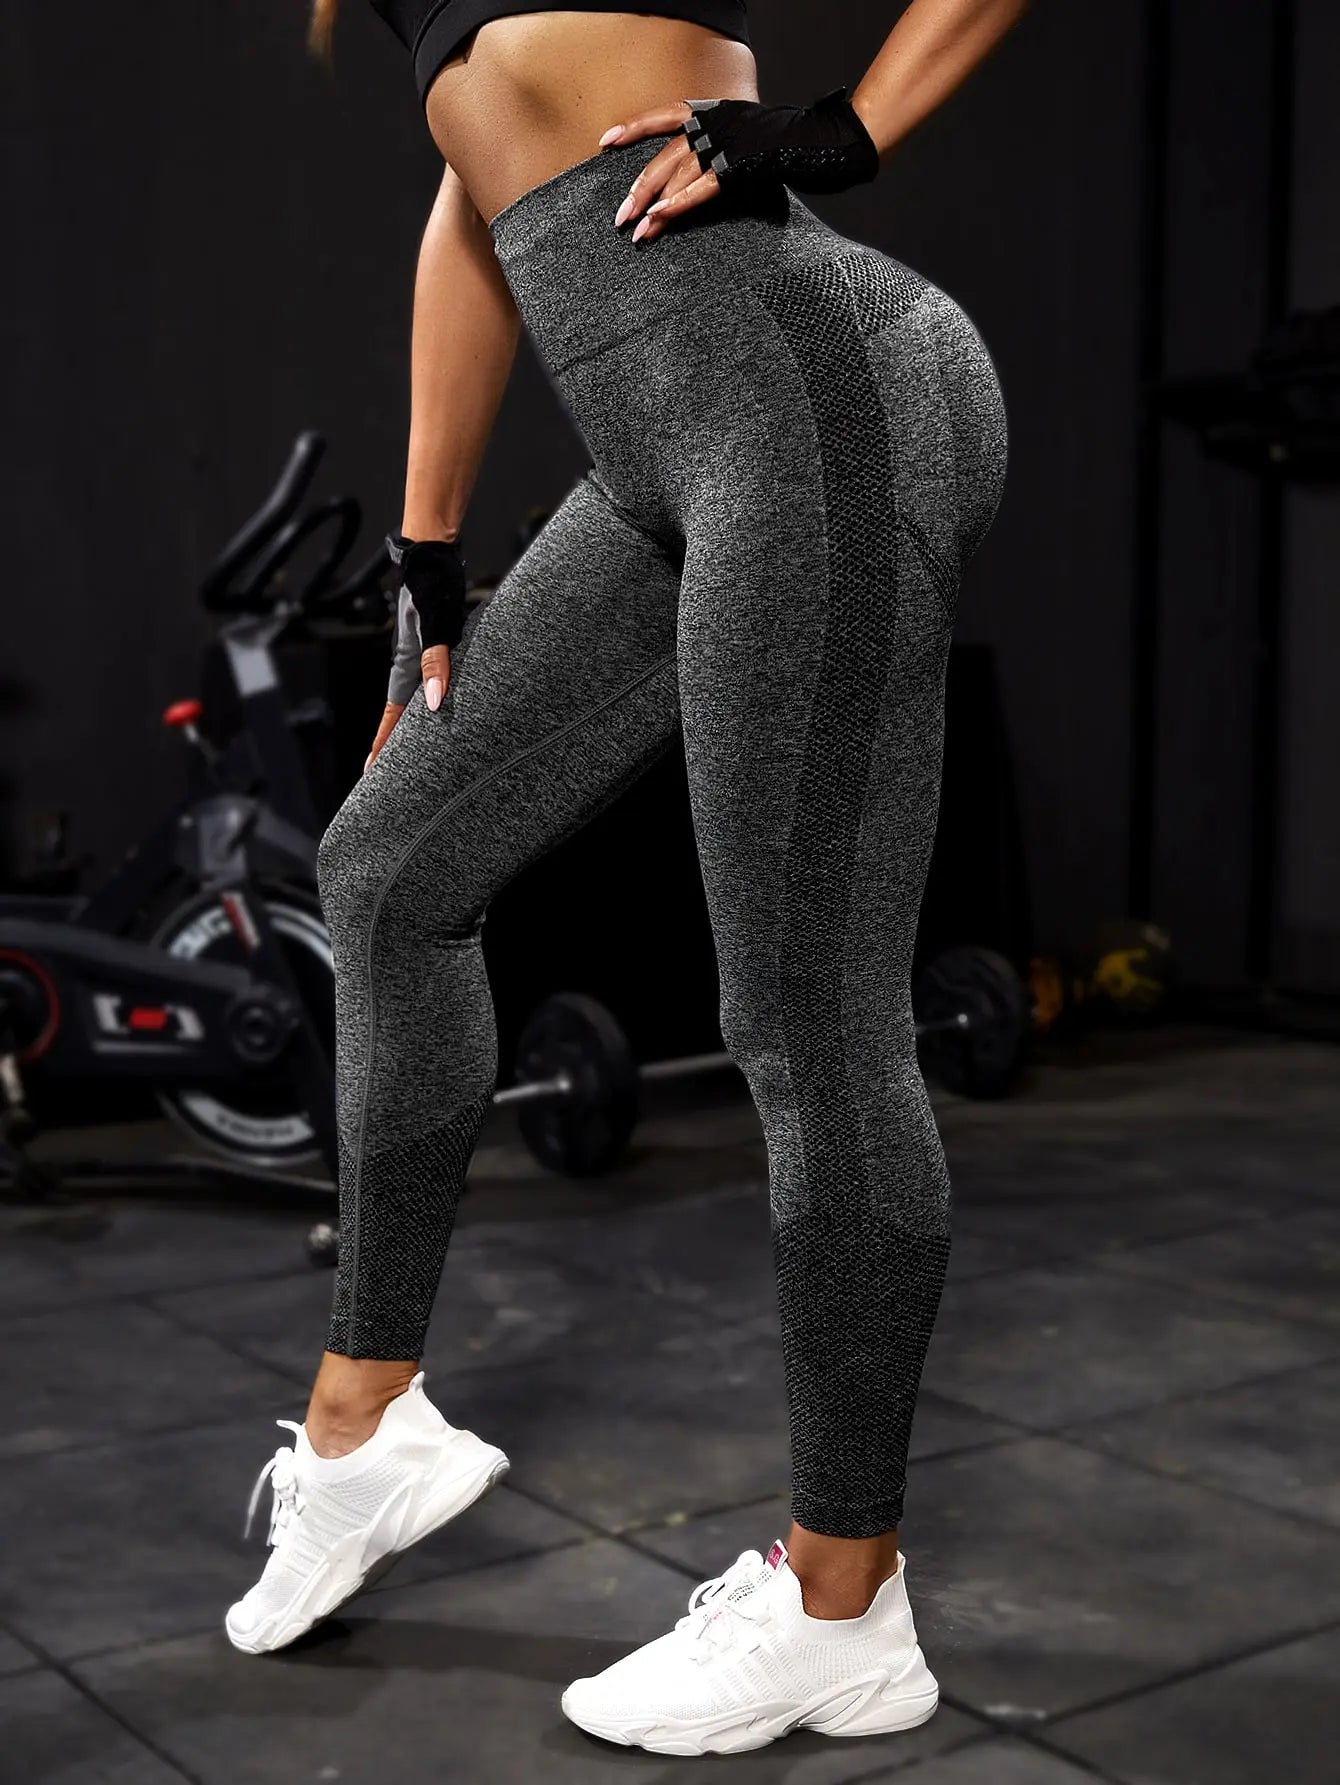 Legging femme noir - Tenue de sport Fitness - Teamshape Vêtement